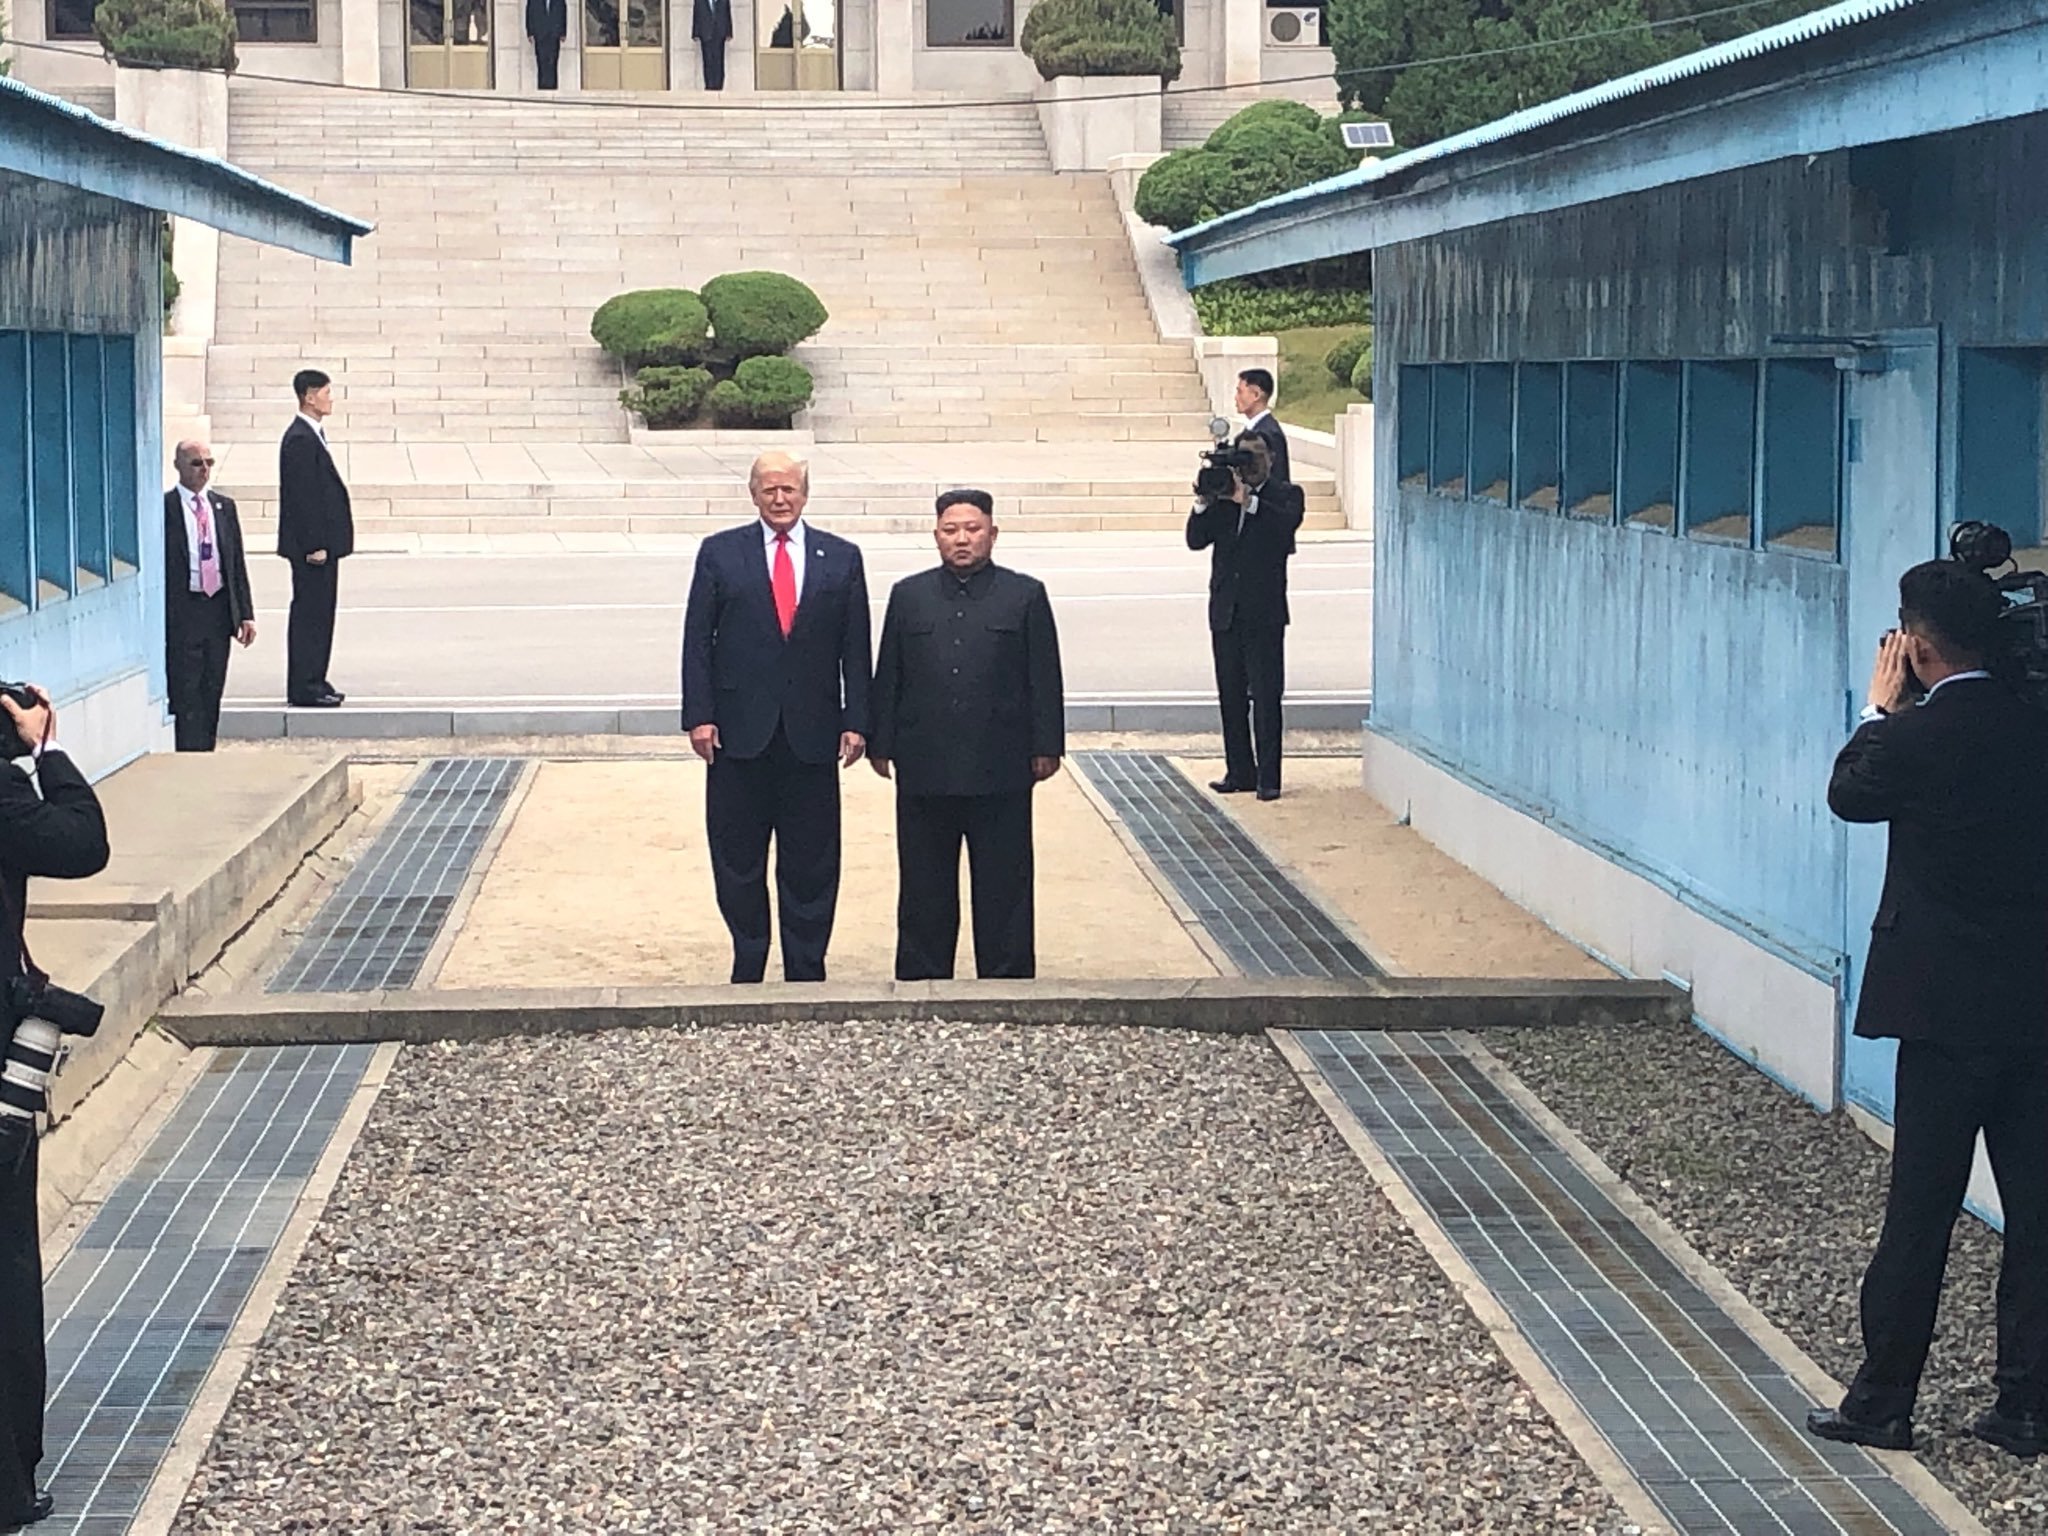 'Thời khắc lịch sử' ông Trump bước sang đất Triều Tiên gặp Kim Jong Un